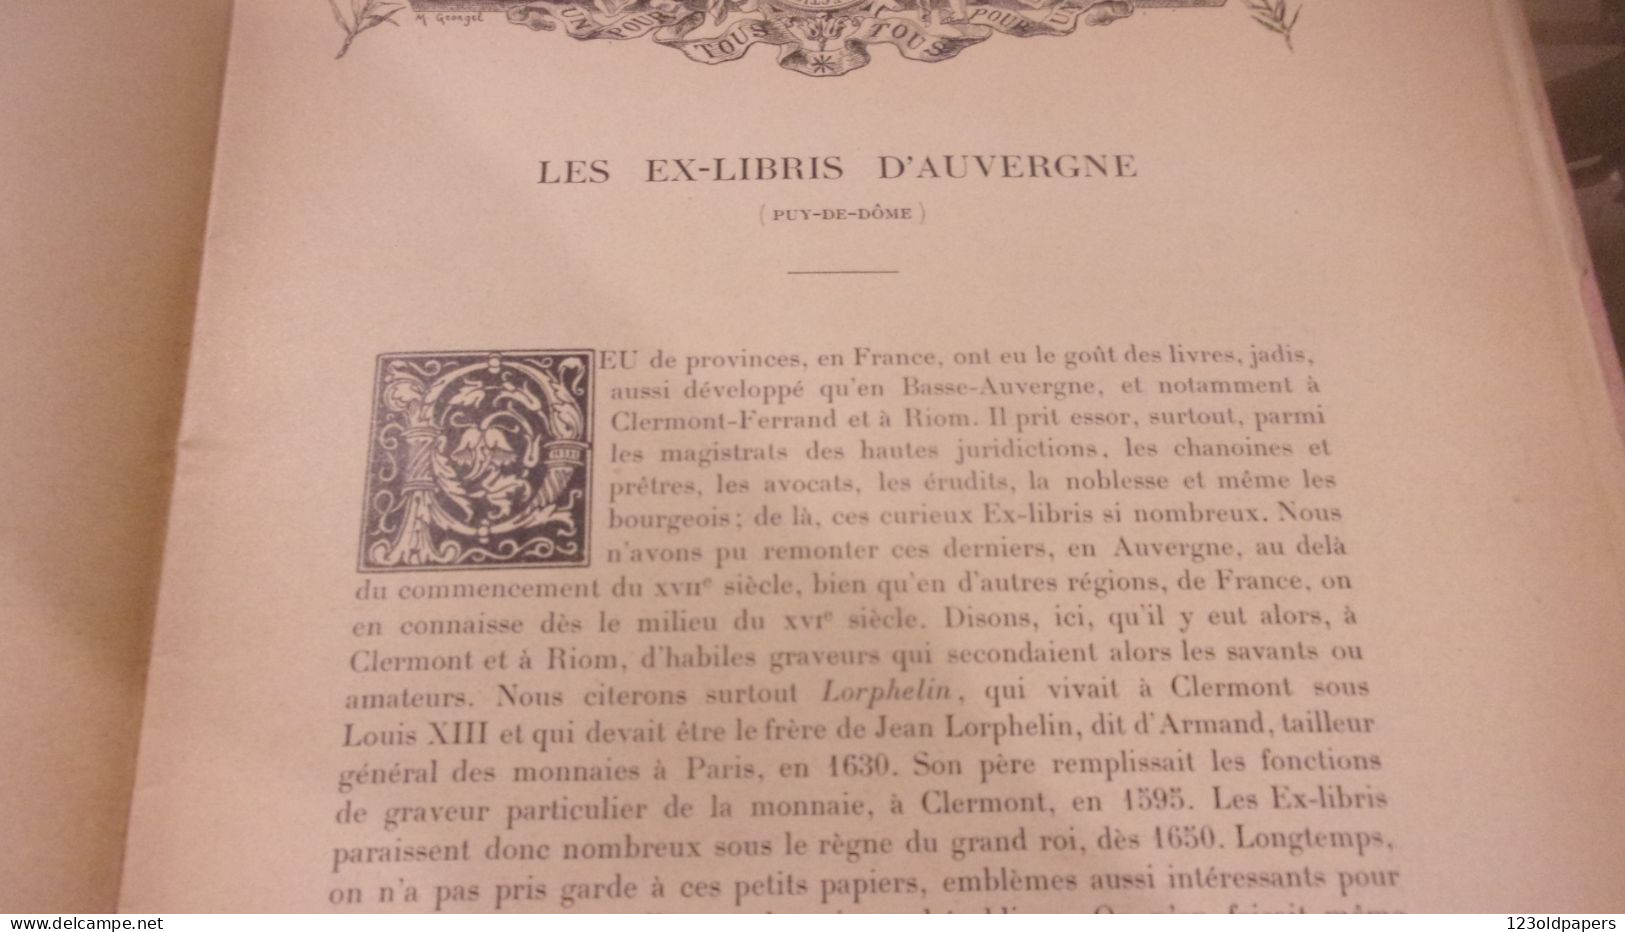 1903 TARDIEU (Ambroise).‎ ‎Dictionnaire des ex-libris de la Basse-Auvergne (Puy-de-Dôme)